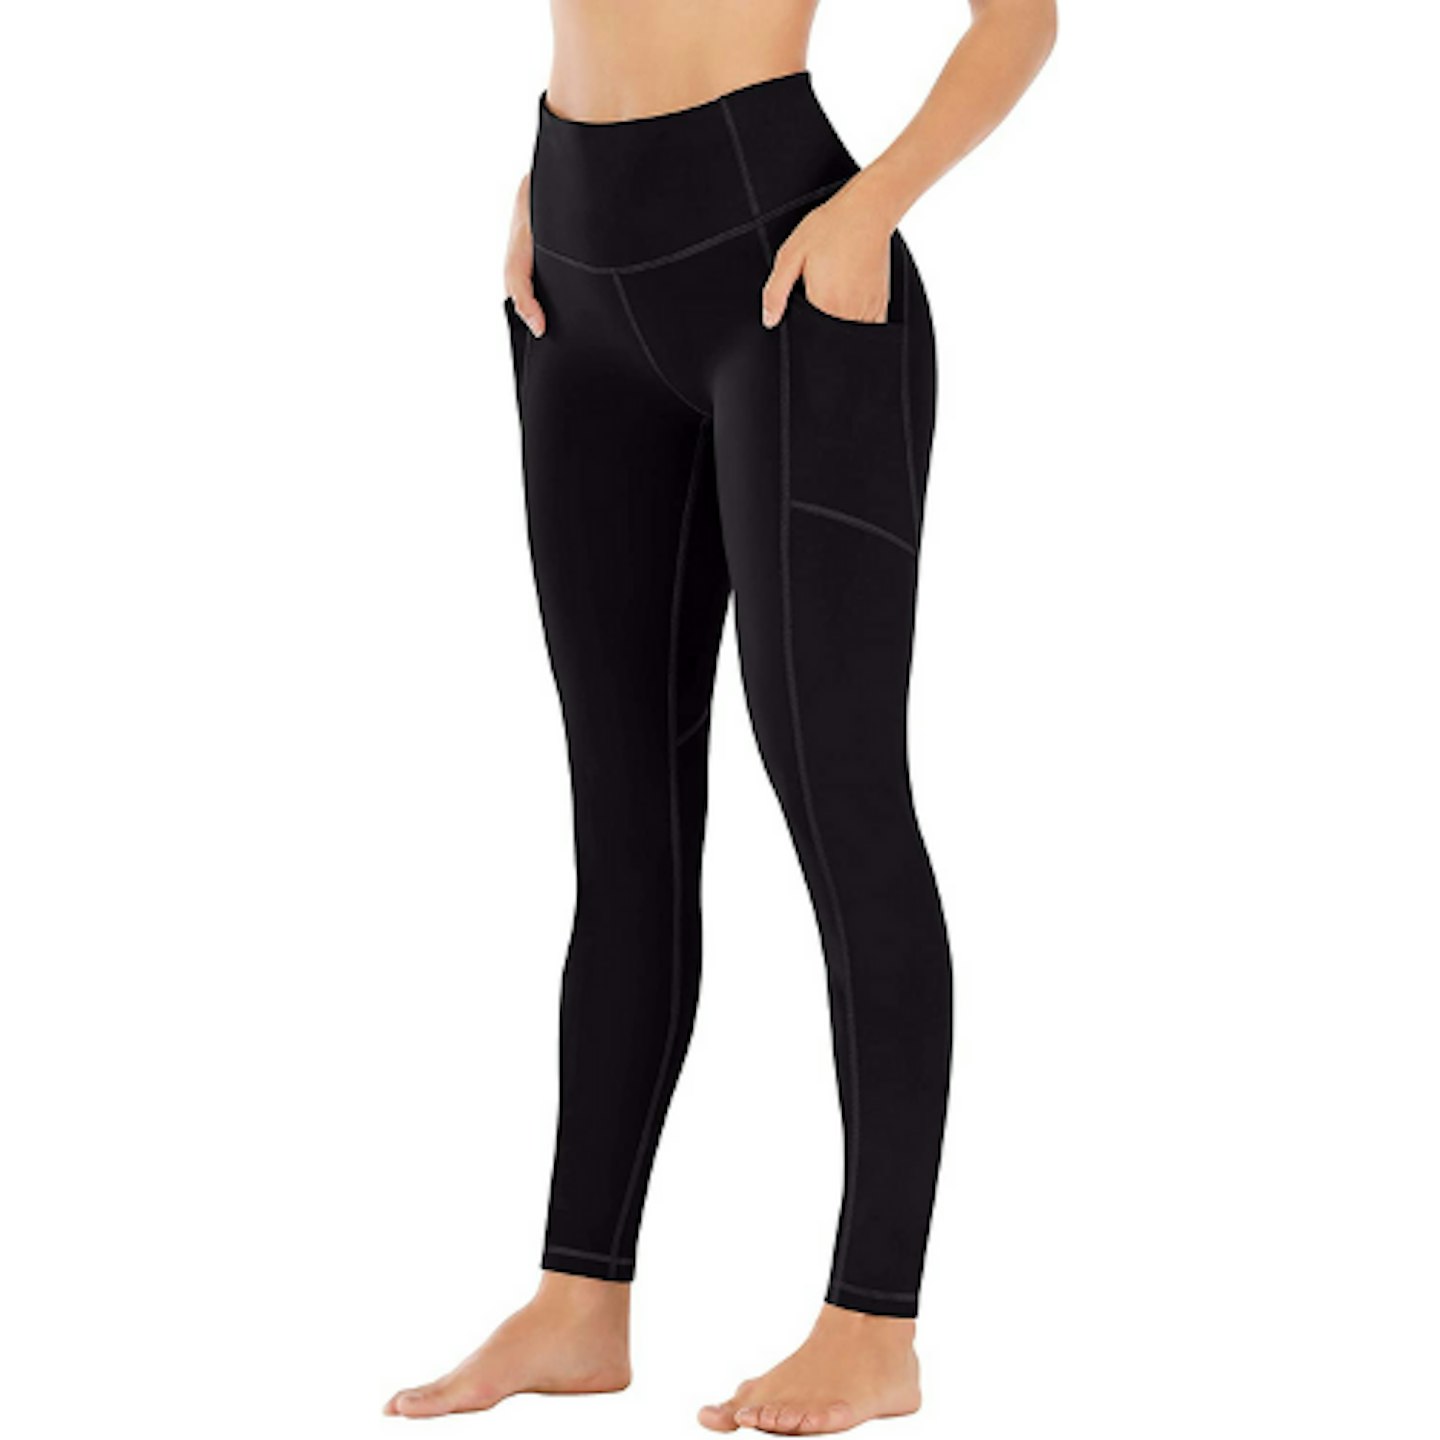 Ewedoos Leggings with Pockets for Women Yoga Pants Women High